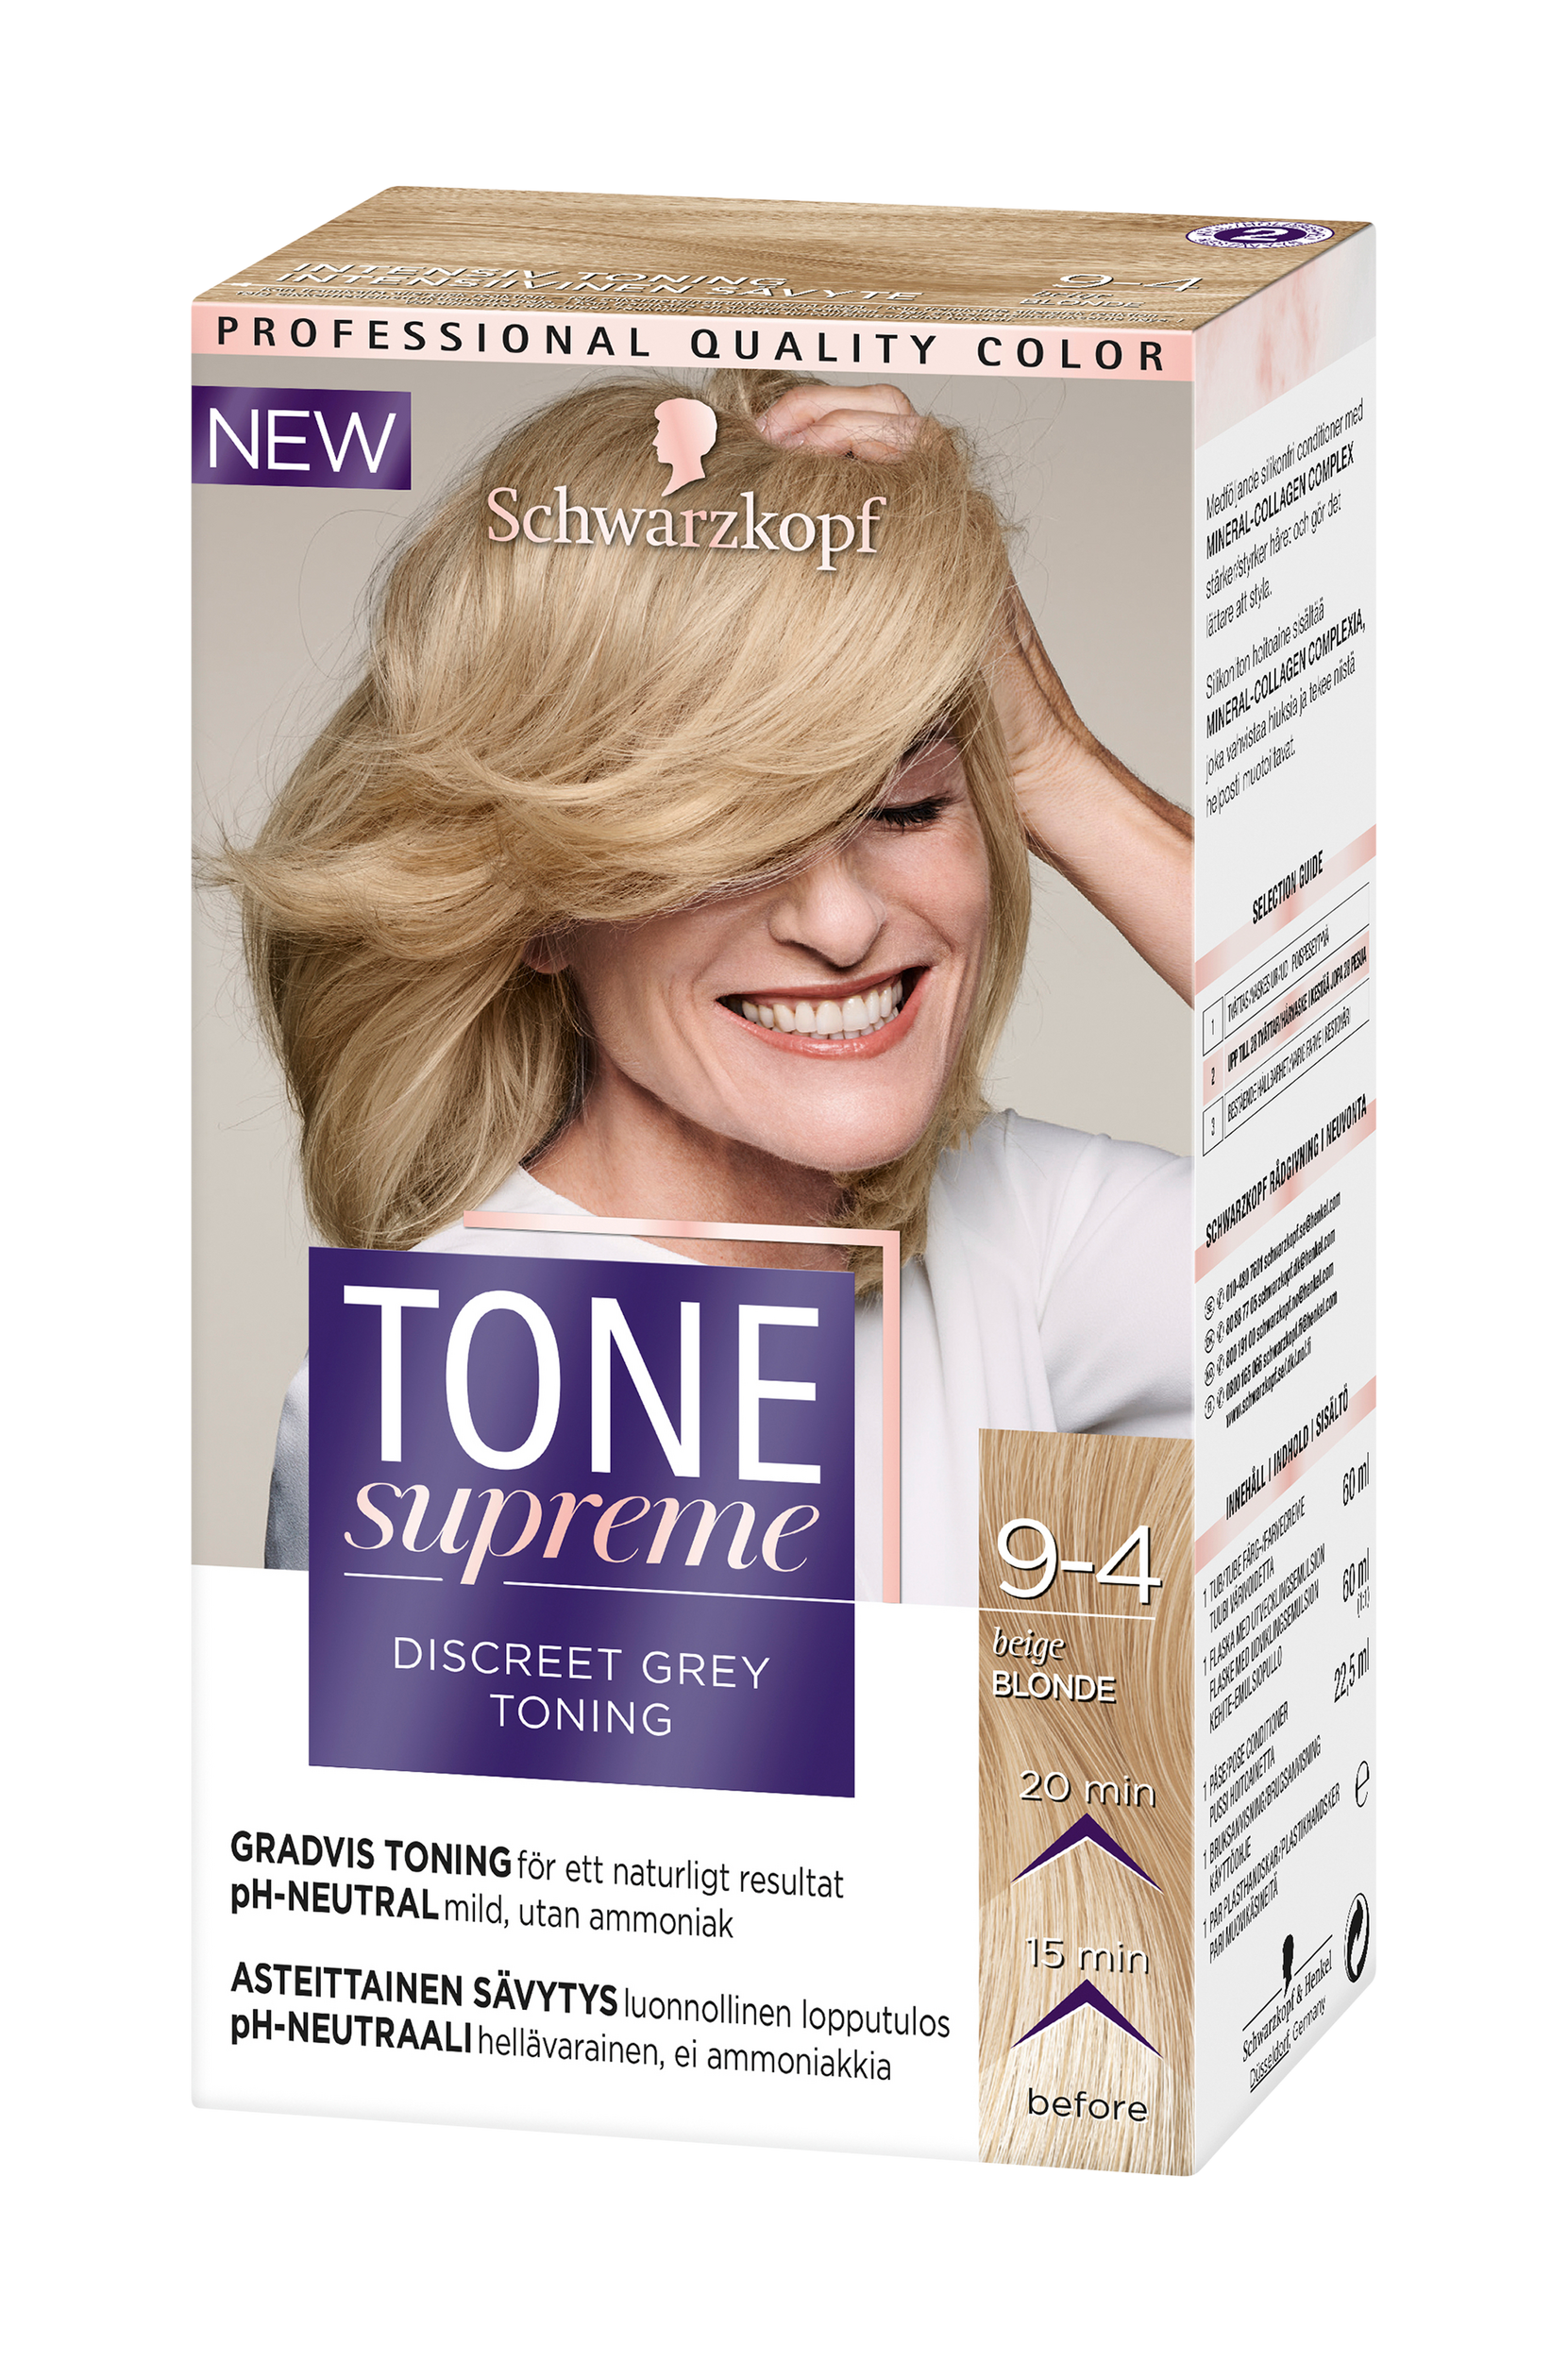 Tone Supreme 9 4 Beige Blond, Schwarzkopf